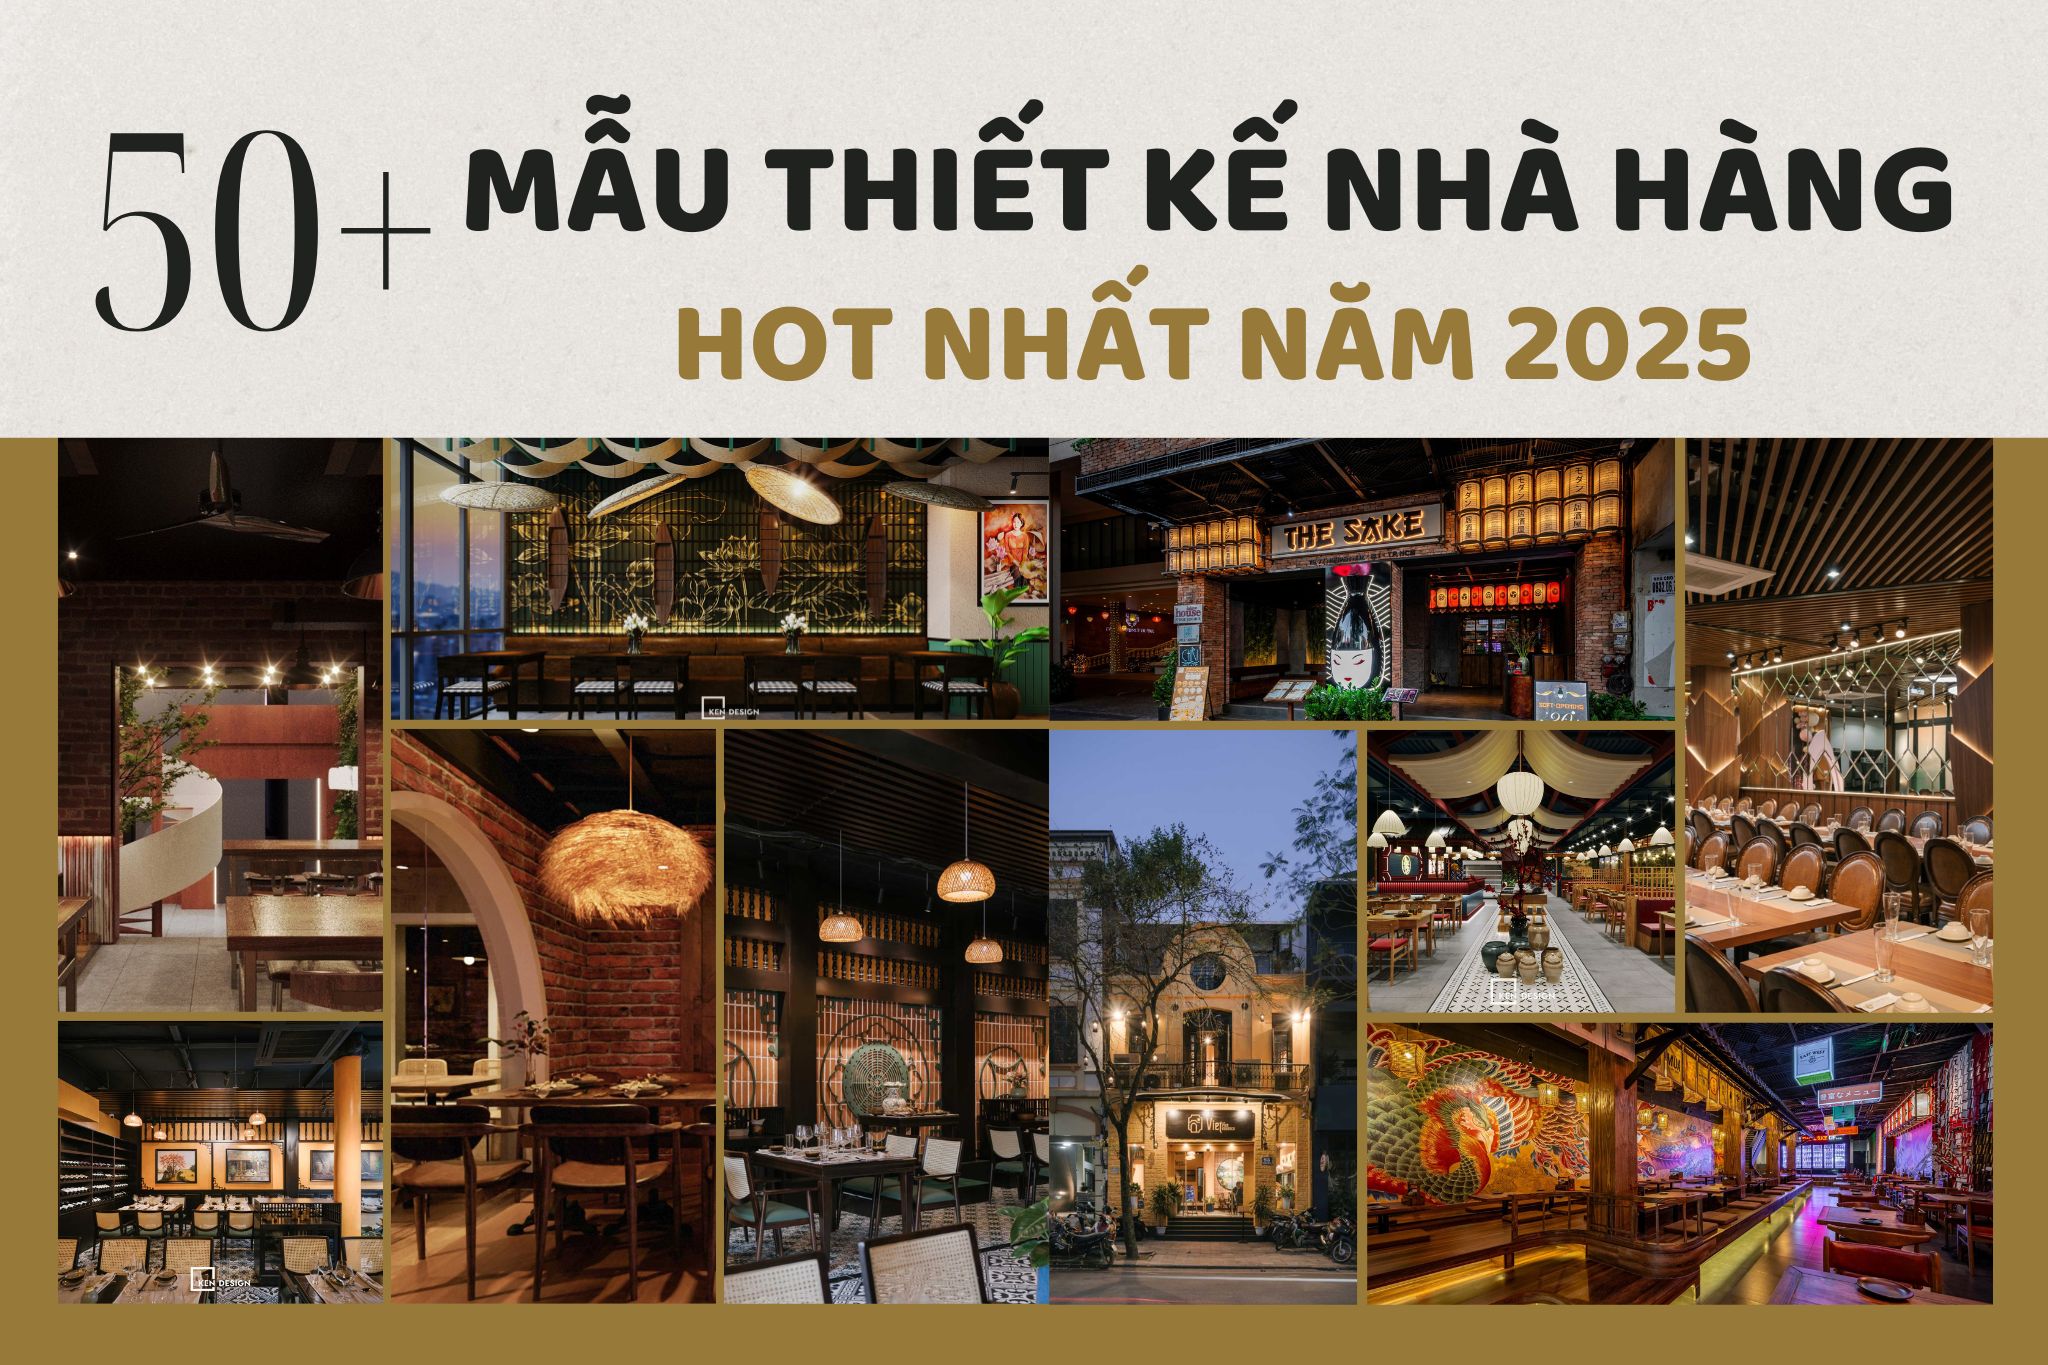 Top 50 mẫu thiết kế nhà hàng hot nhất 2025